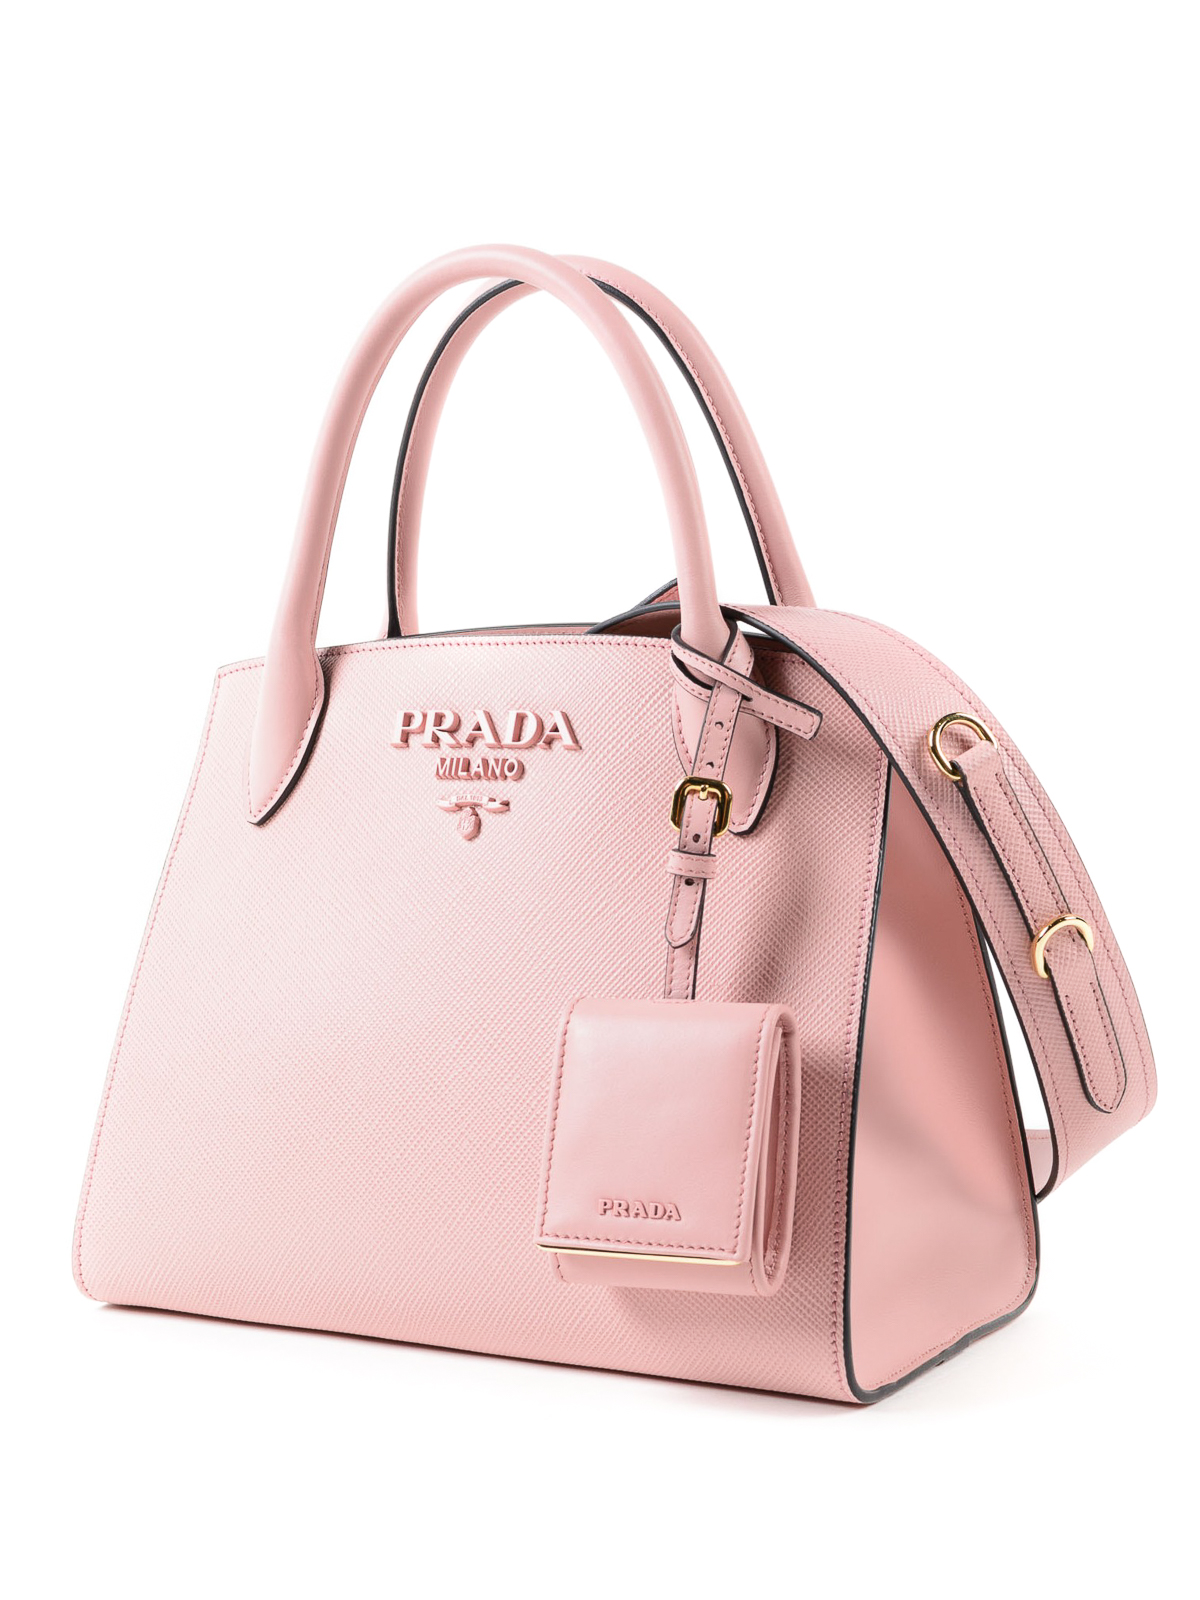 Cross body bags Prada - Monochrome pink saffiano bag - 1BA1562ERX924